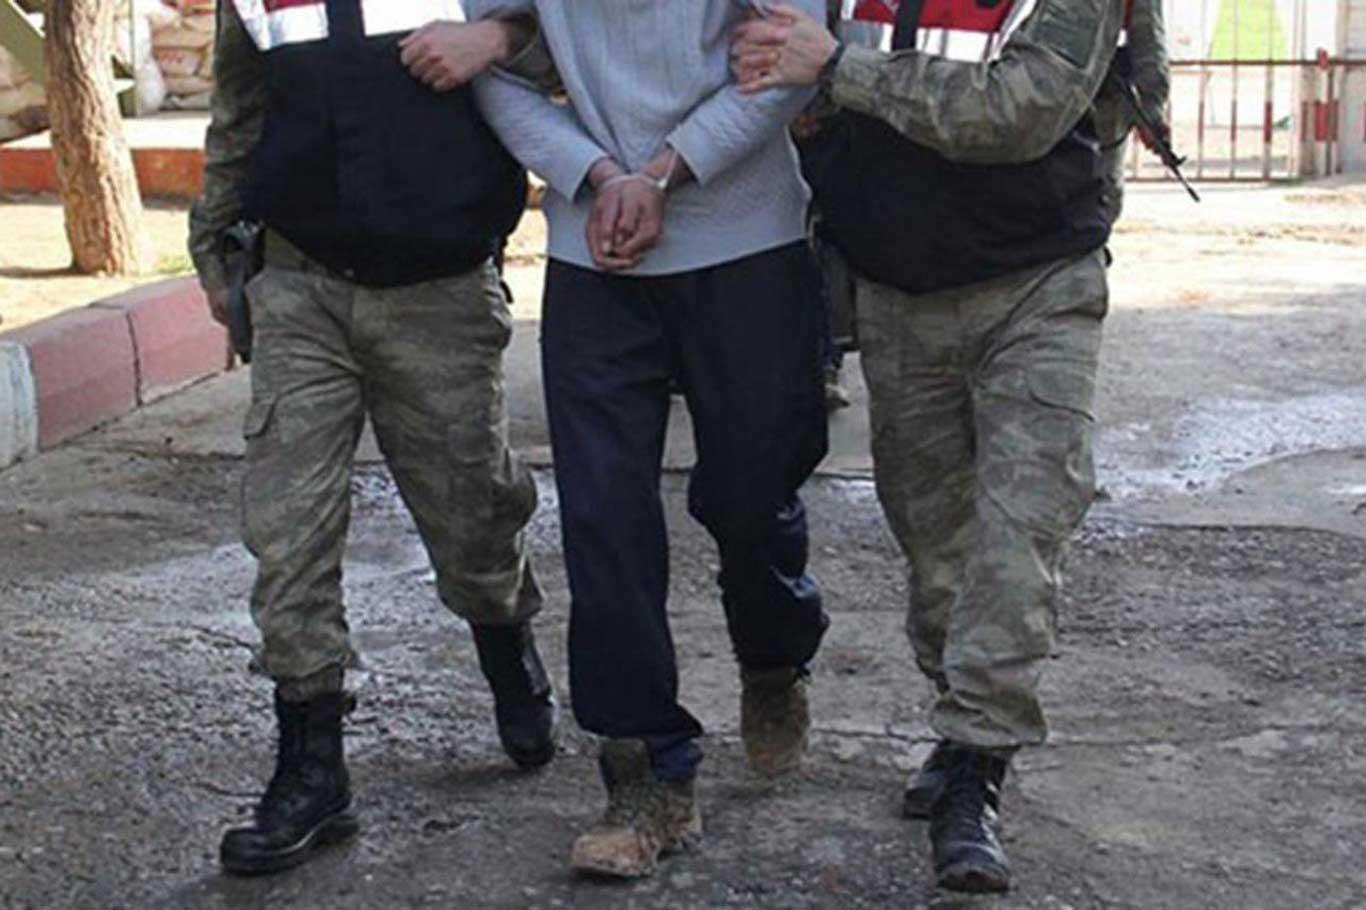 Mardin’de PKK operasyonu: 5 gözaltı